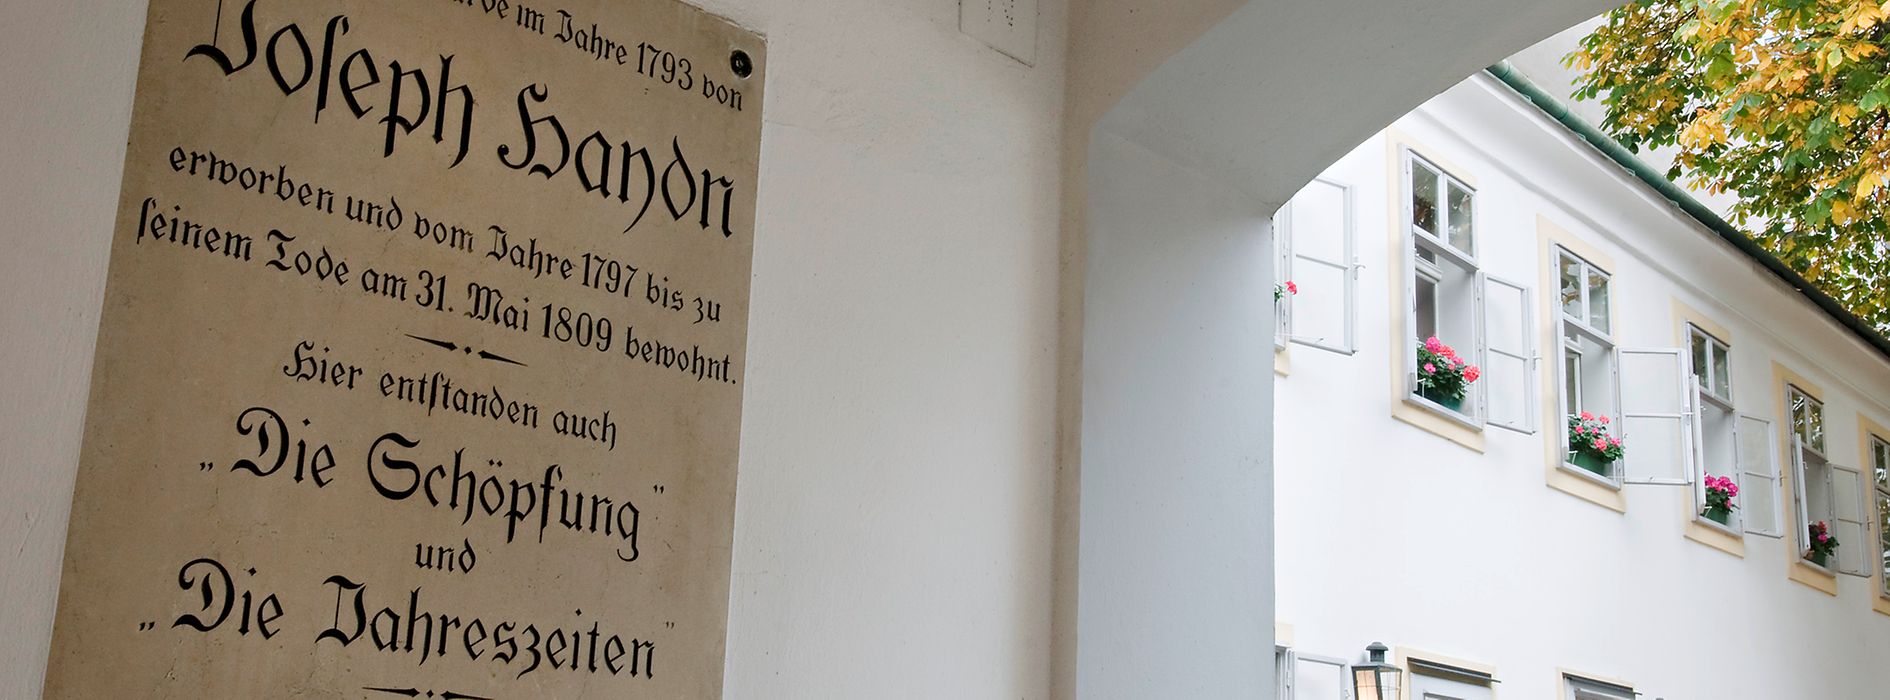 Haydn ház, emléktábla